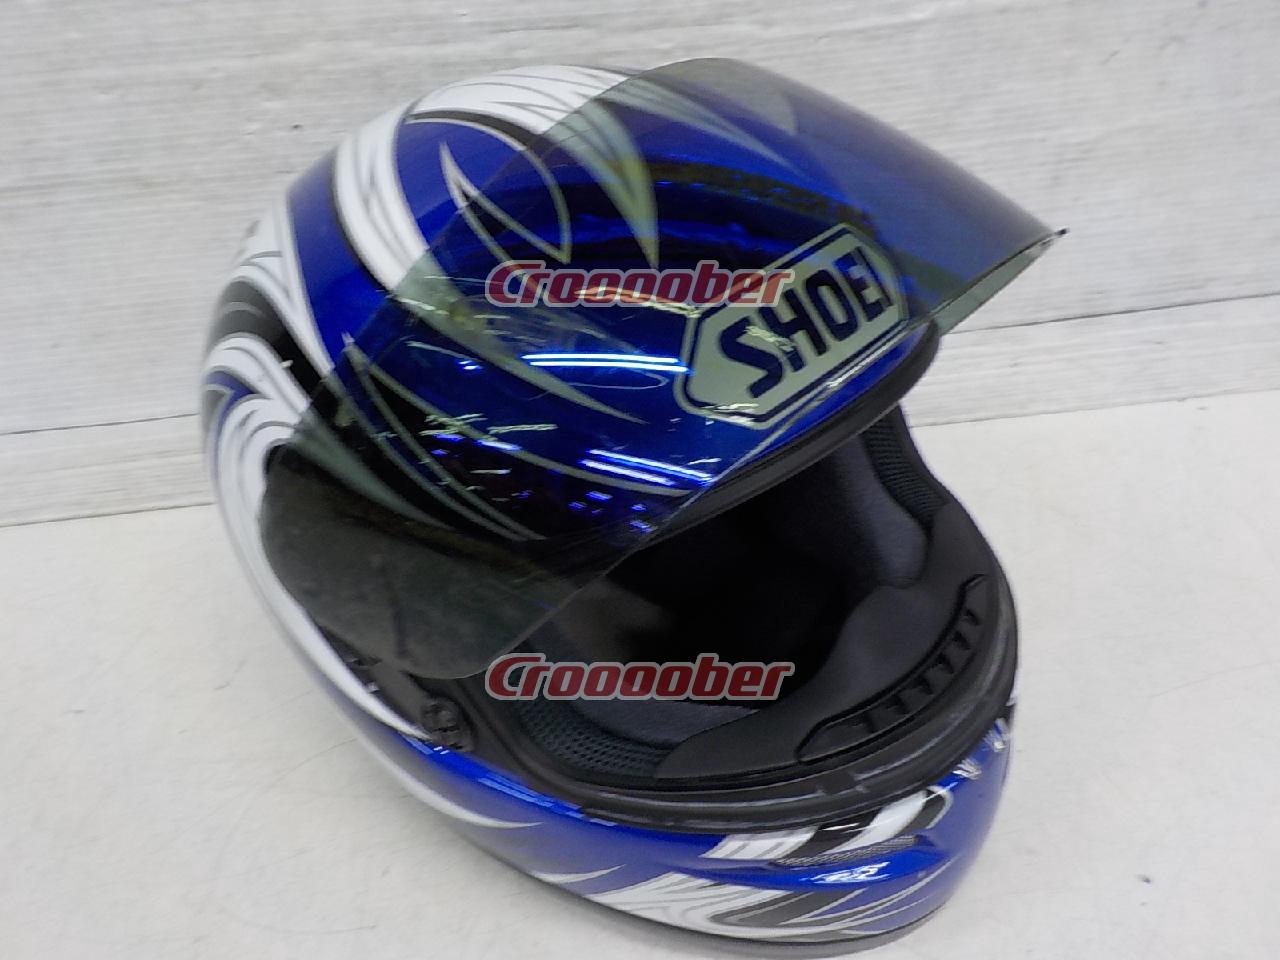 SHOEI(ショウエイ) Z-4 グラフィックモデル フルフェイスヘルメット 